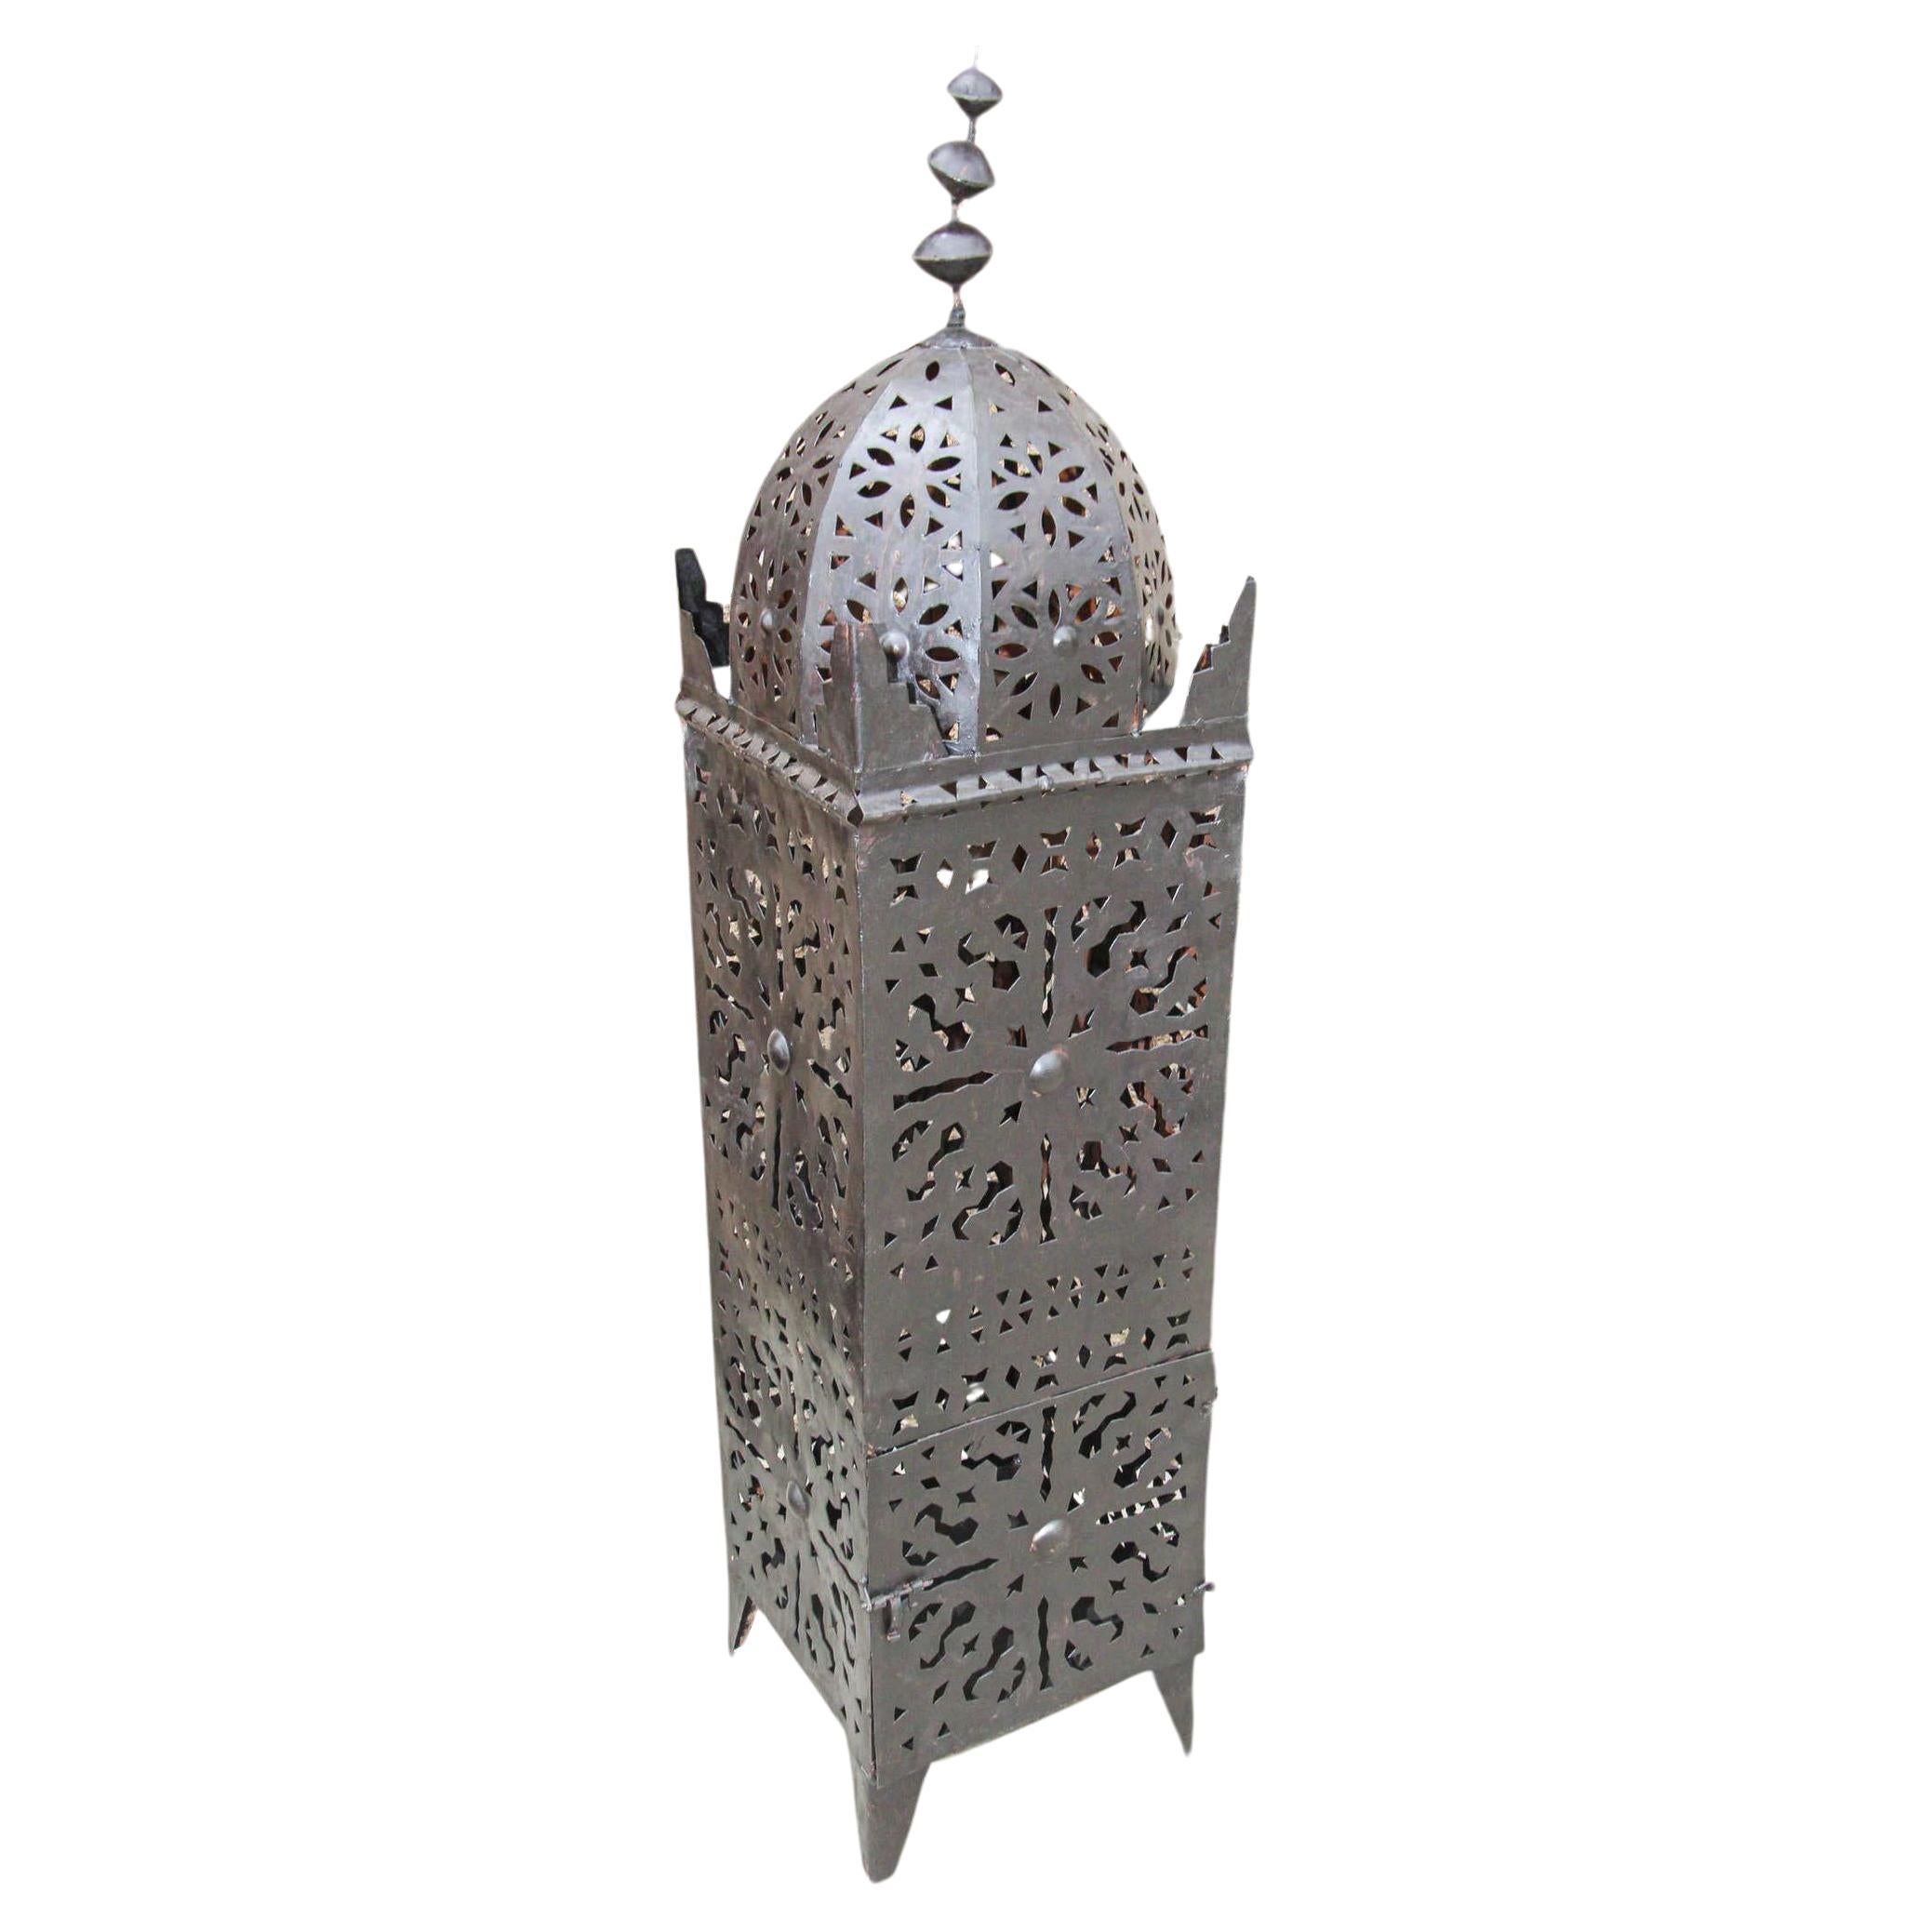 Grande lanterne d'extérieur vintage marocaine en métal.
Lampe à bougie en forme de kasbah fabriquée à la main au Maroc par des artisans, métal découpé et martelé à la main, ouverture à l'avant pour utilisation avec des bougies piliers.
La lanterne